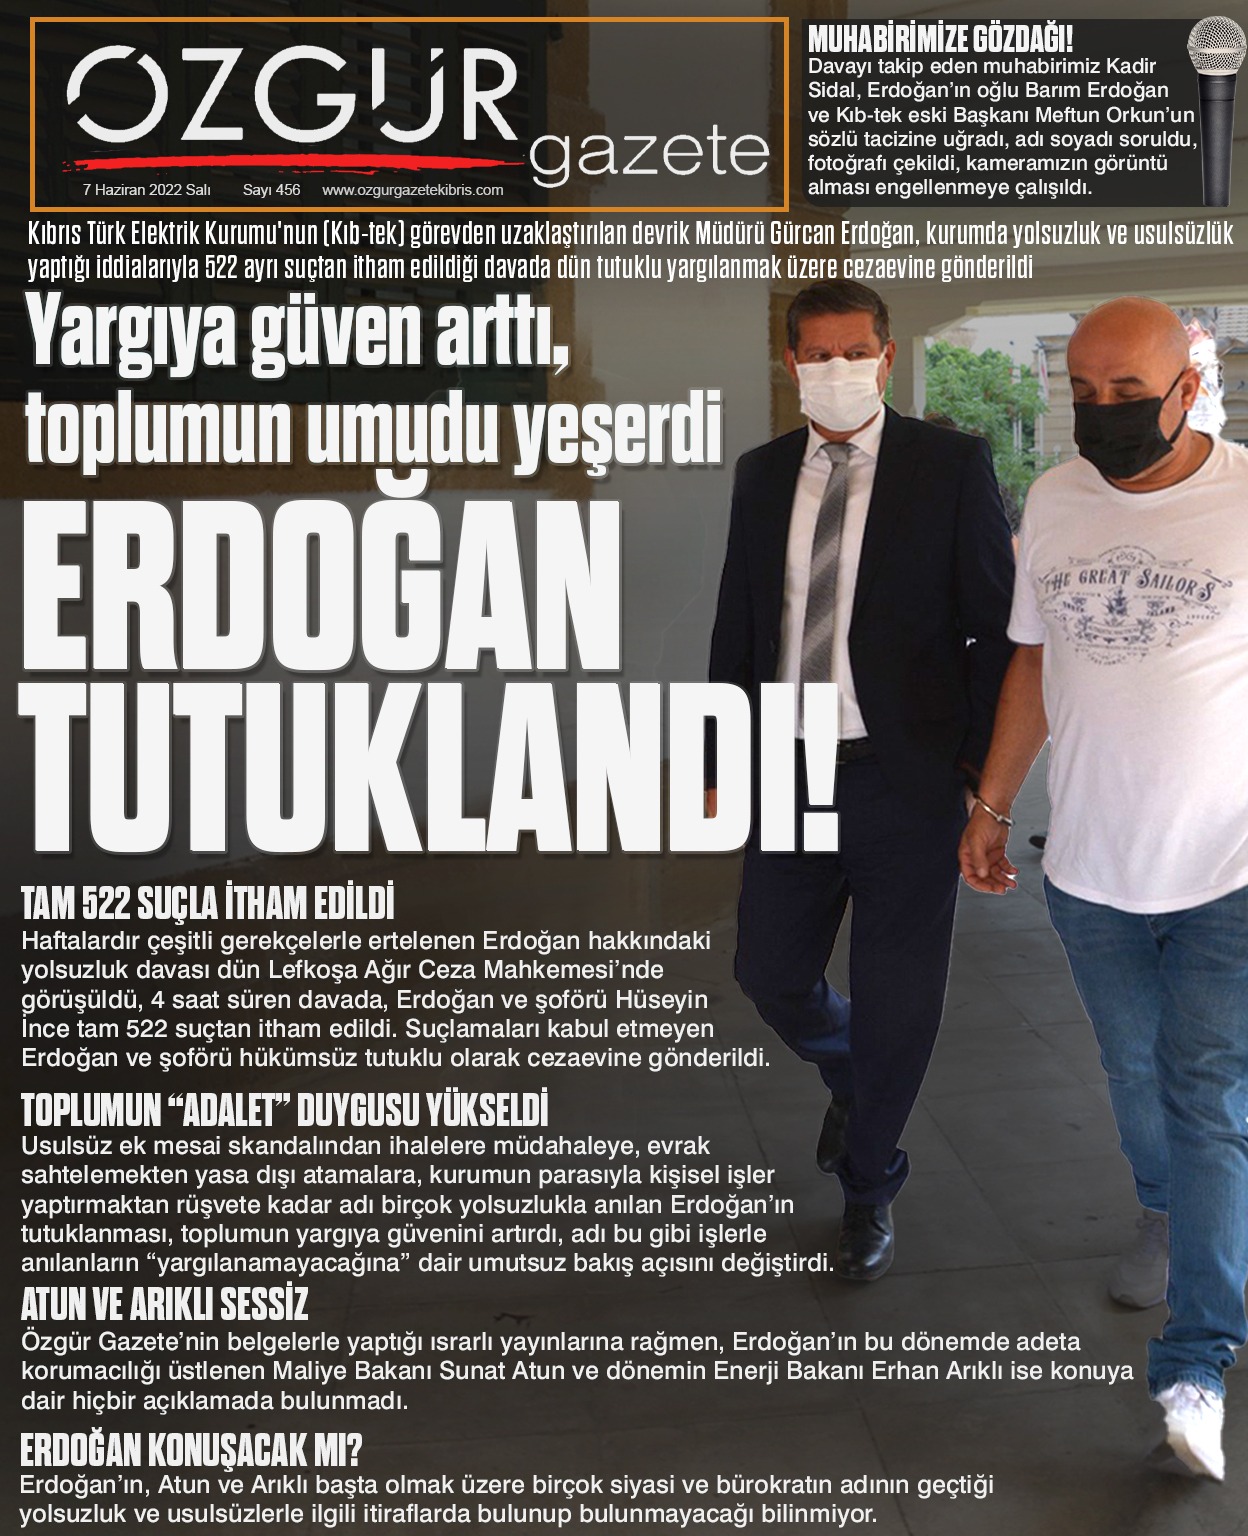 ozgur_gazete_kibris_gurcan_erdogan_tutuklandi